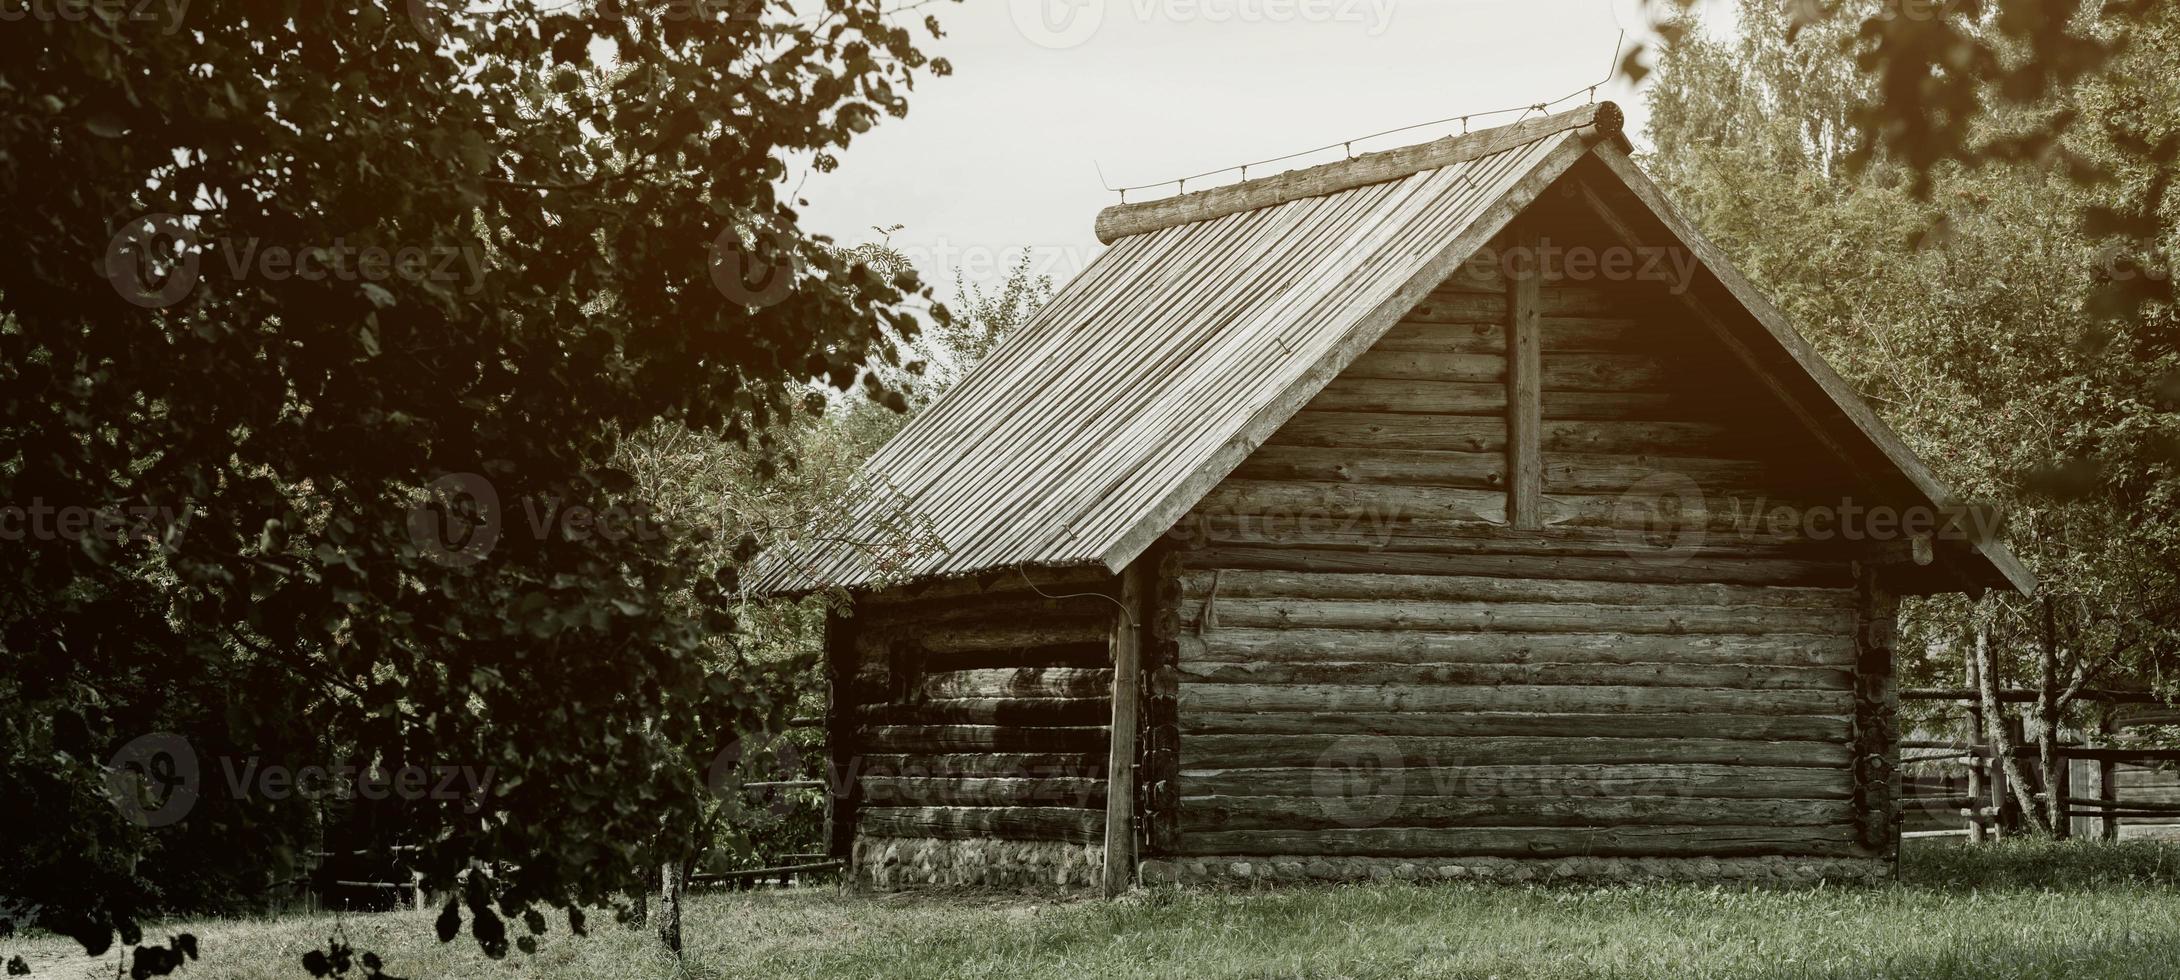 gammal trä- hus. foto